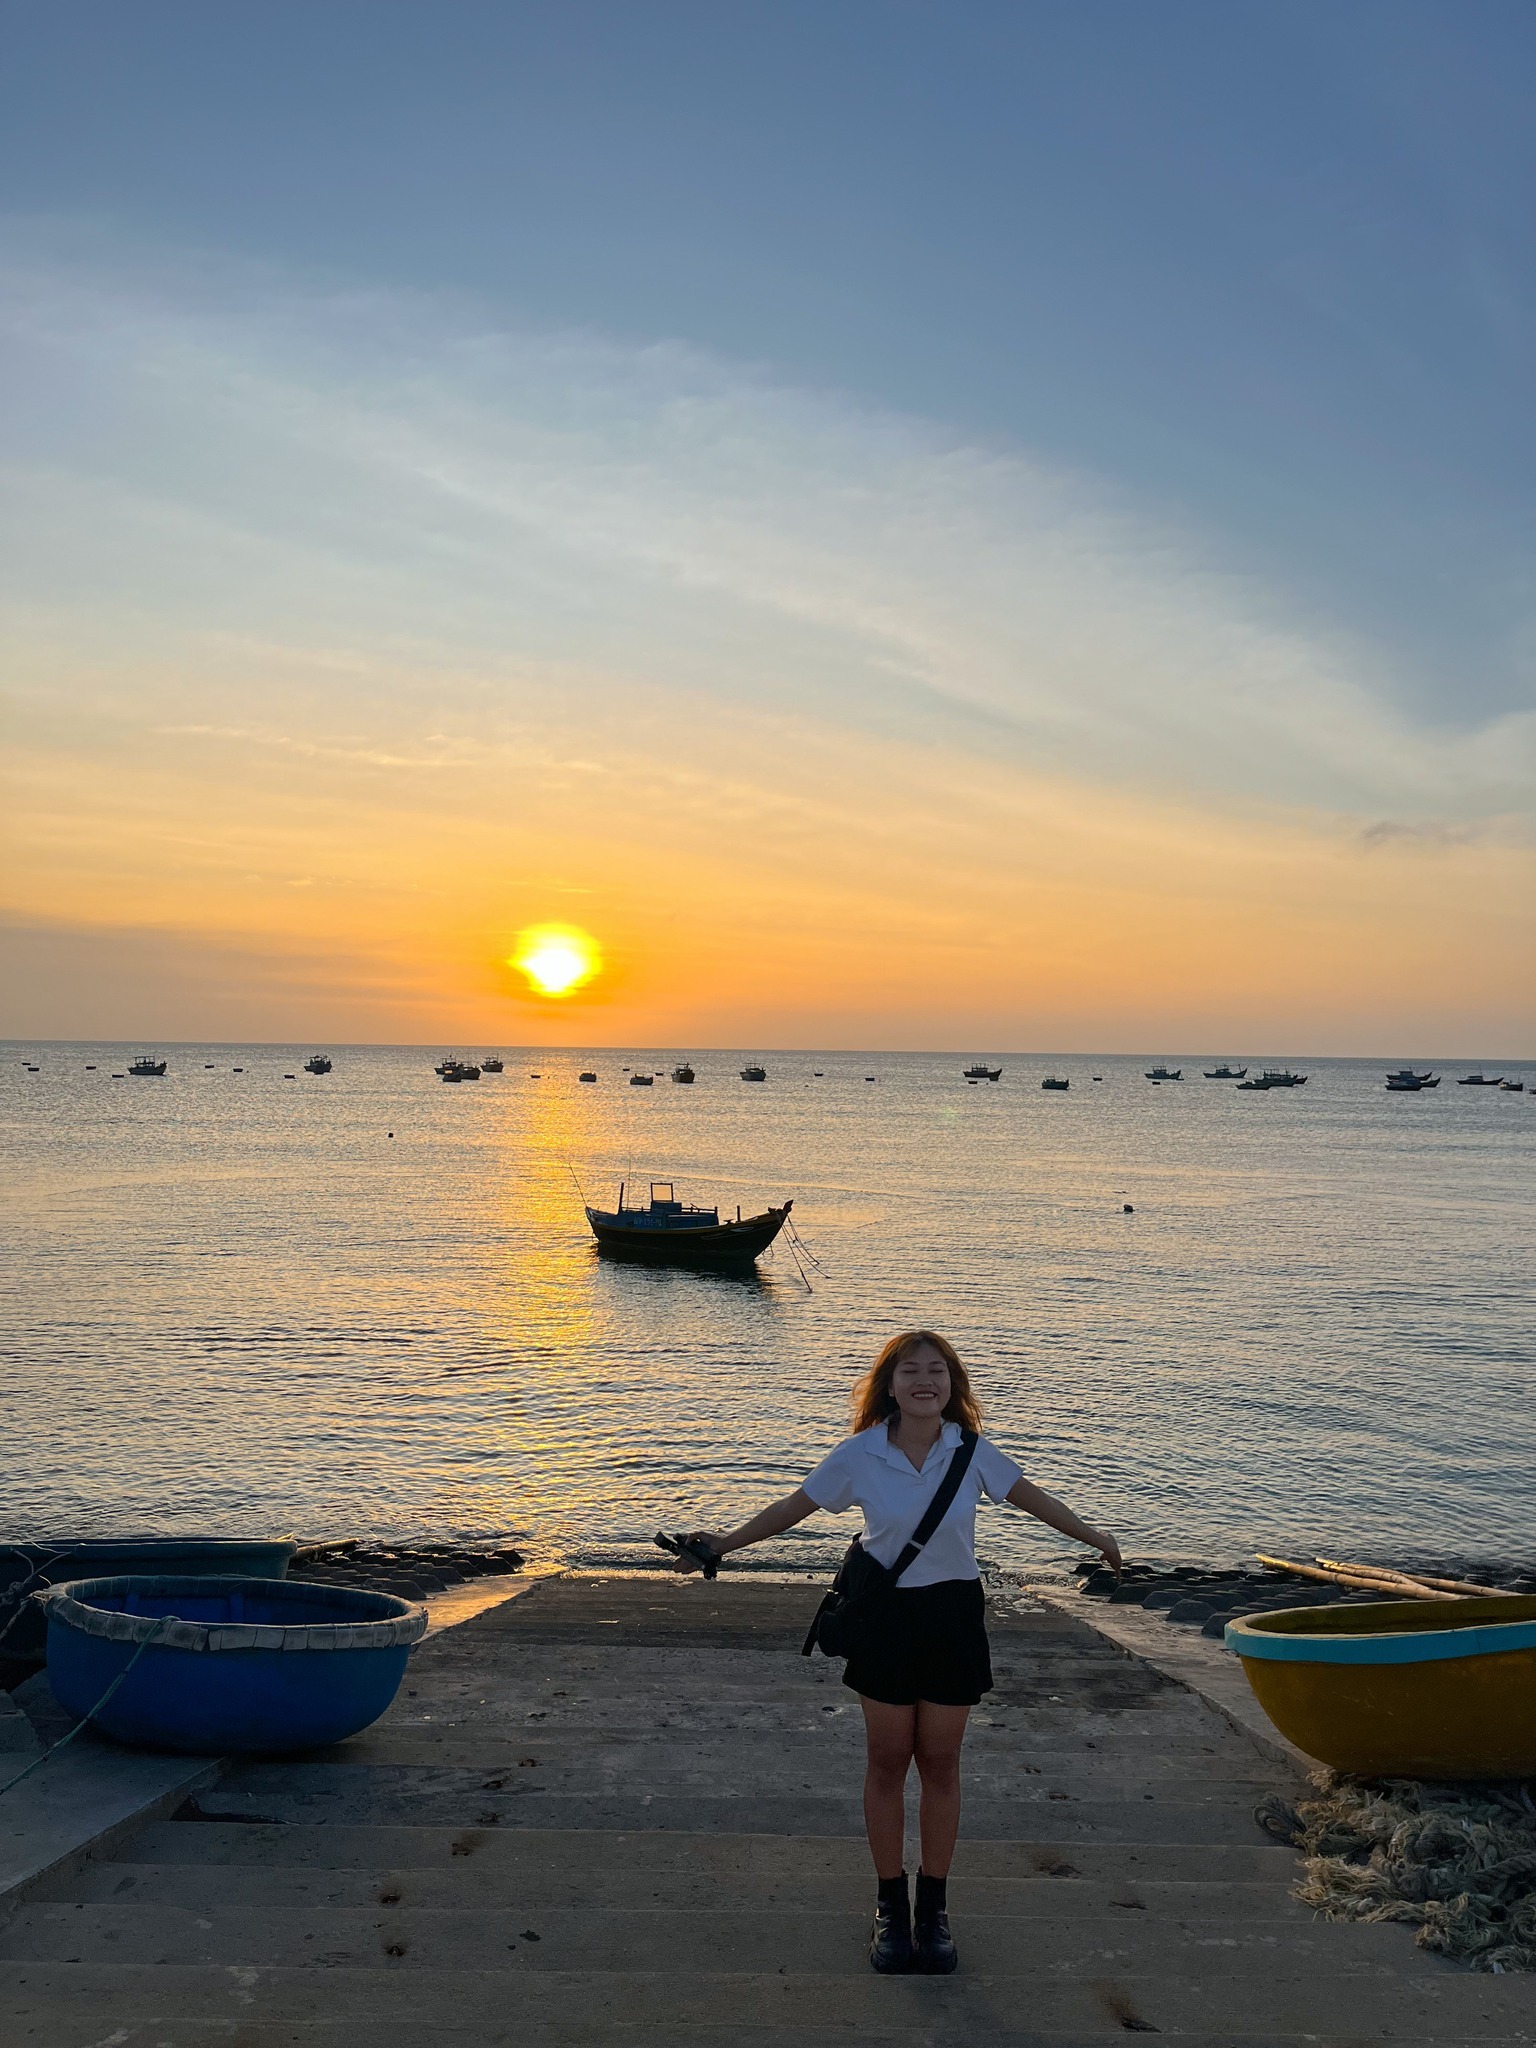 Trải nghiệm đáng nhớ ở hòn đảo xinh đẹp của Việt Nam - 9